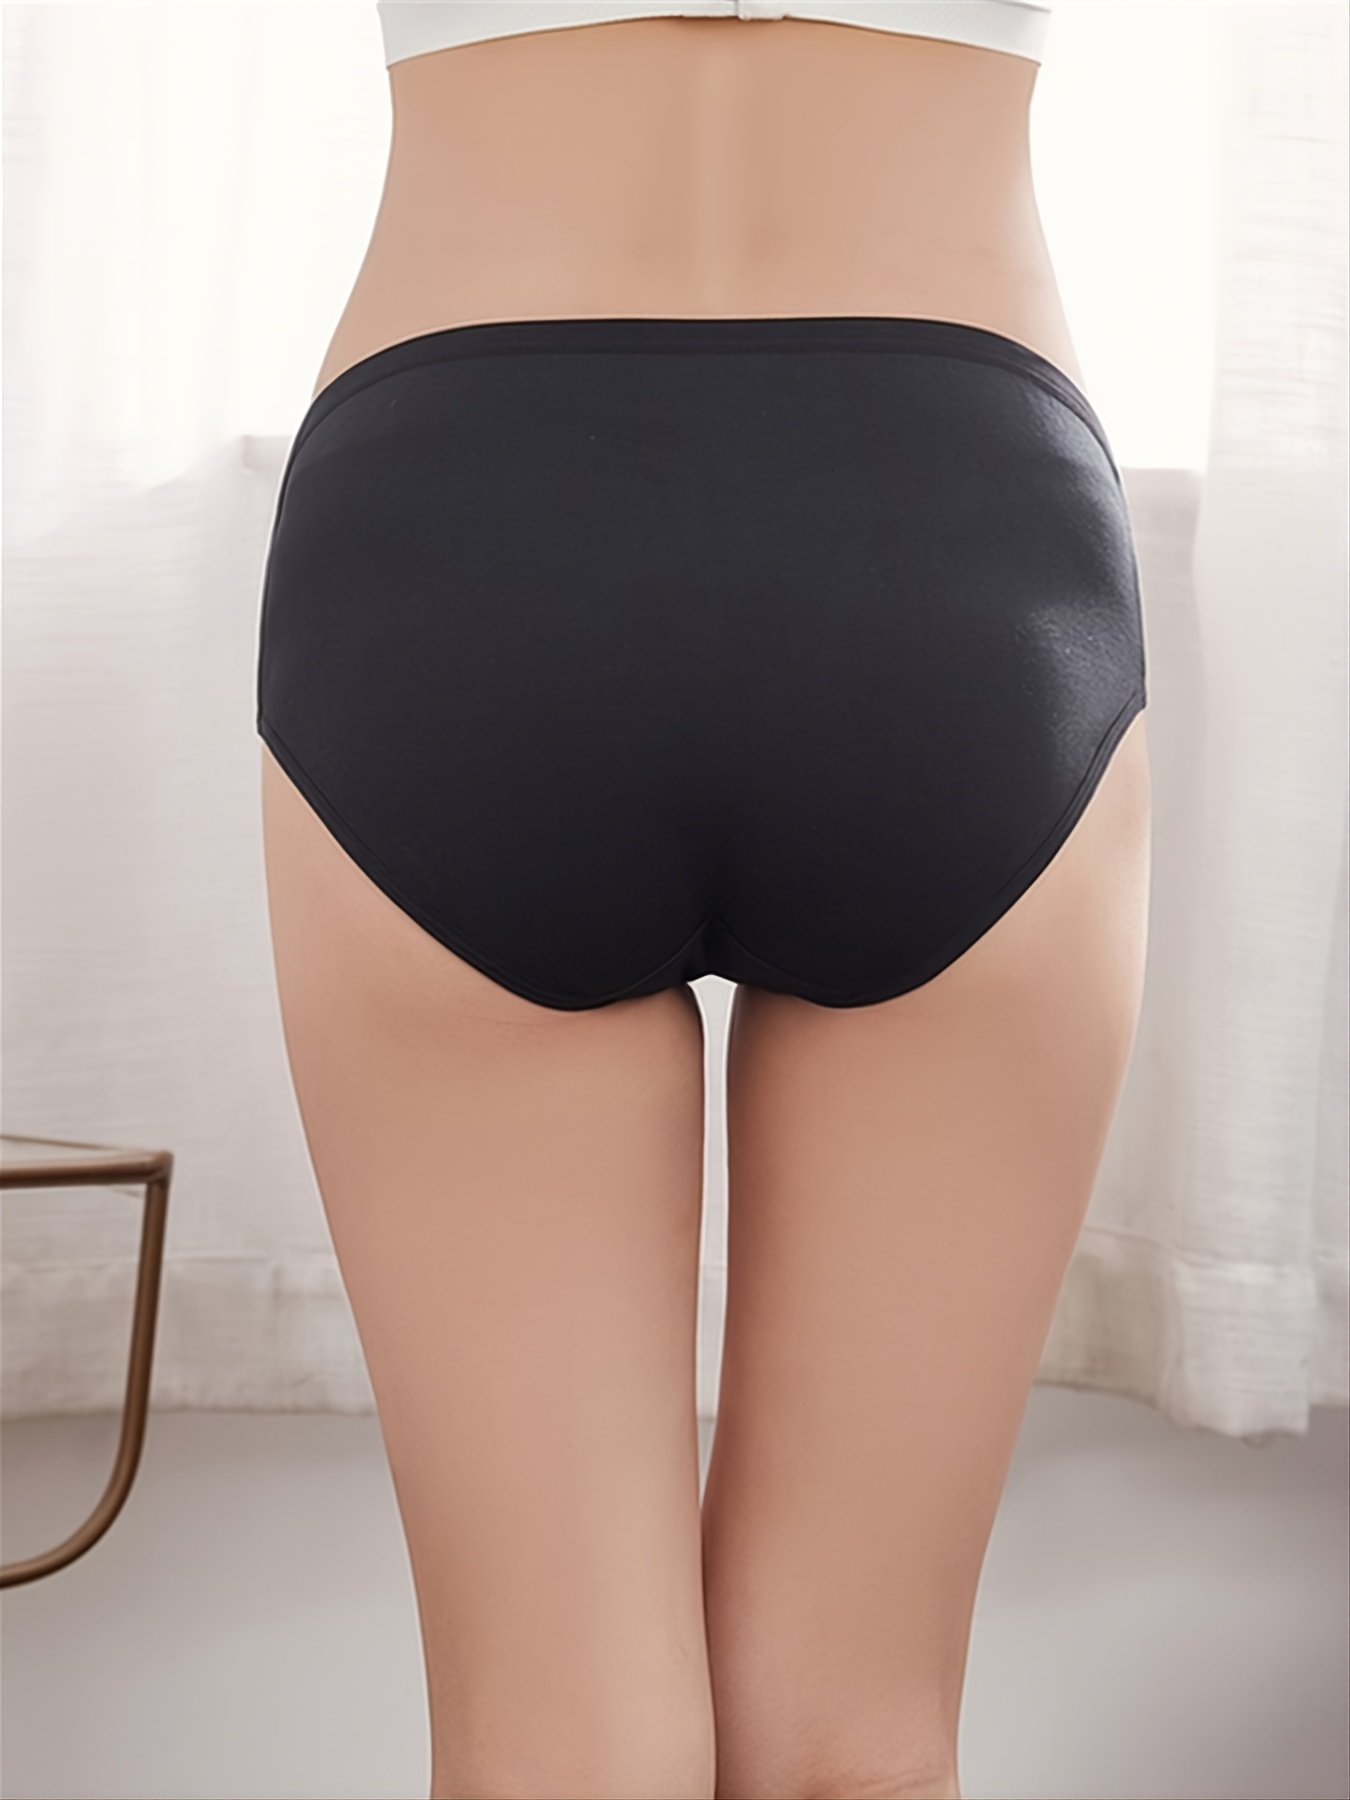 cotton pregnant women underwear low waist